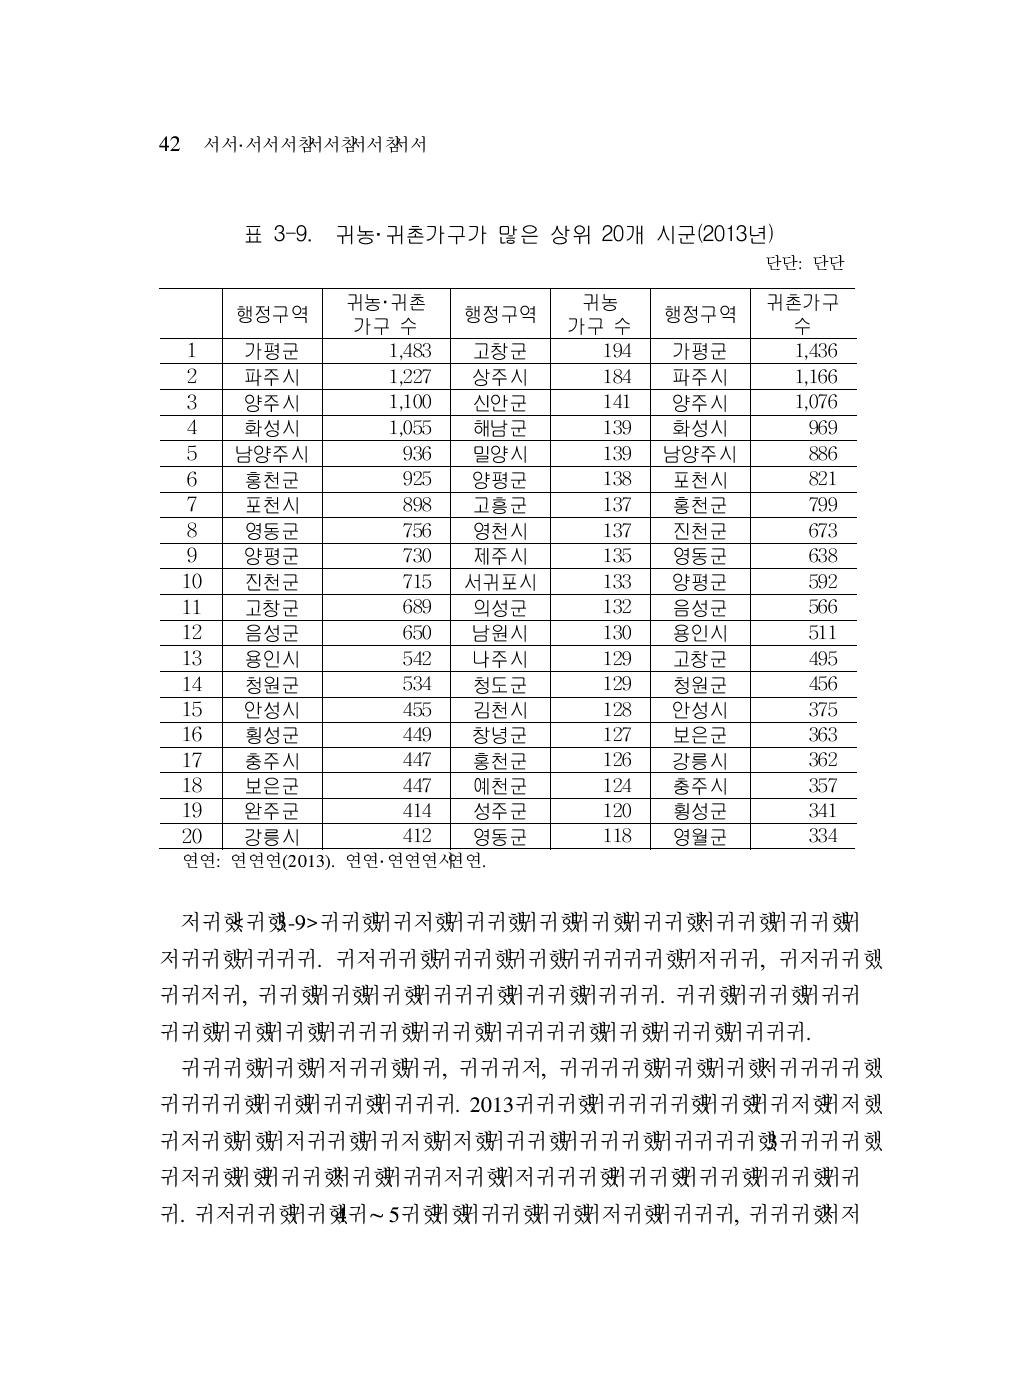 귀농·귀촌가구가 많은 상위 20개 시군(2013년)